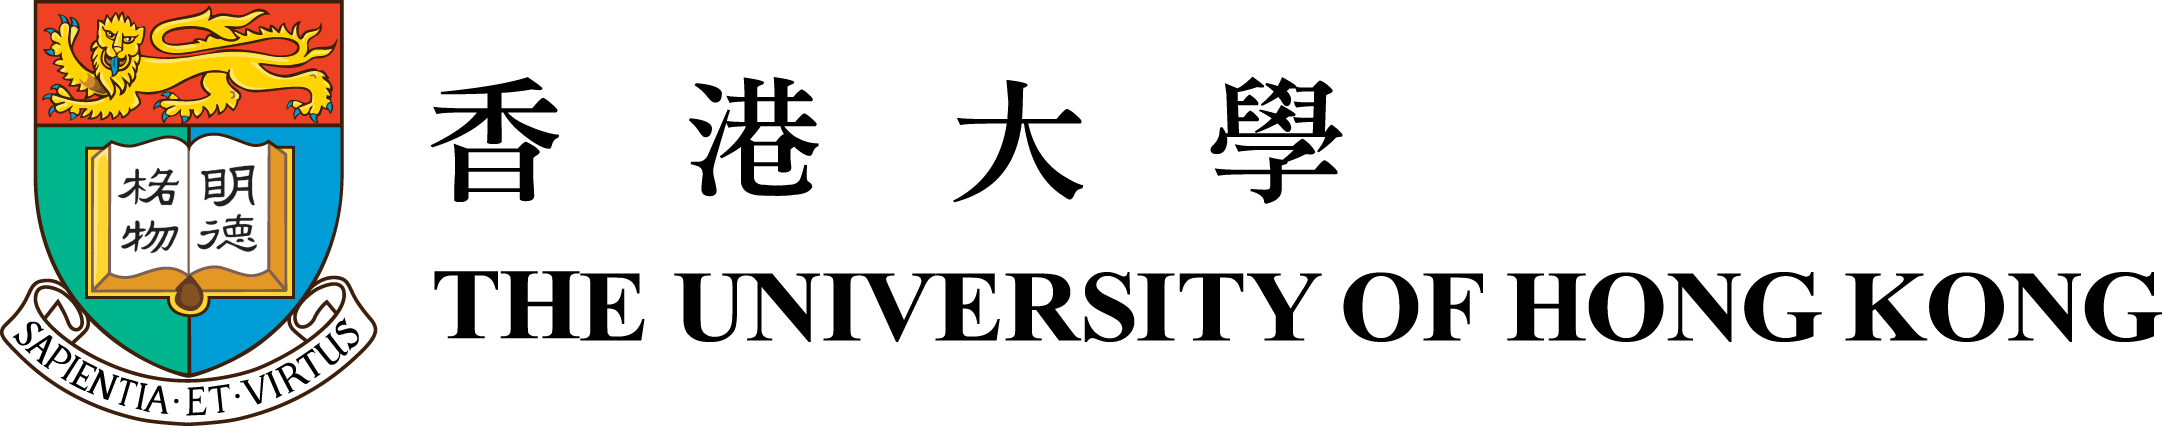 Uni logo